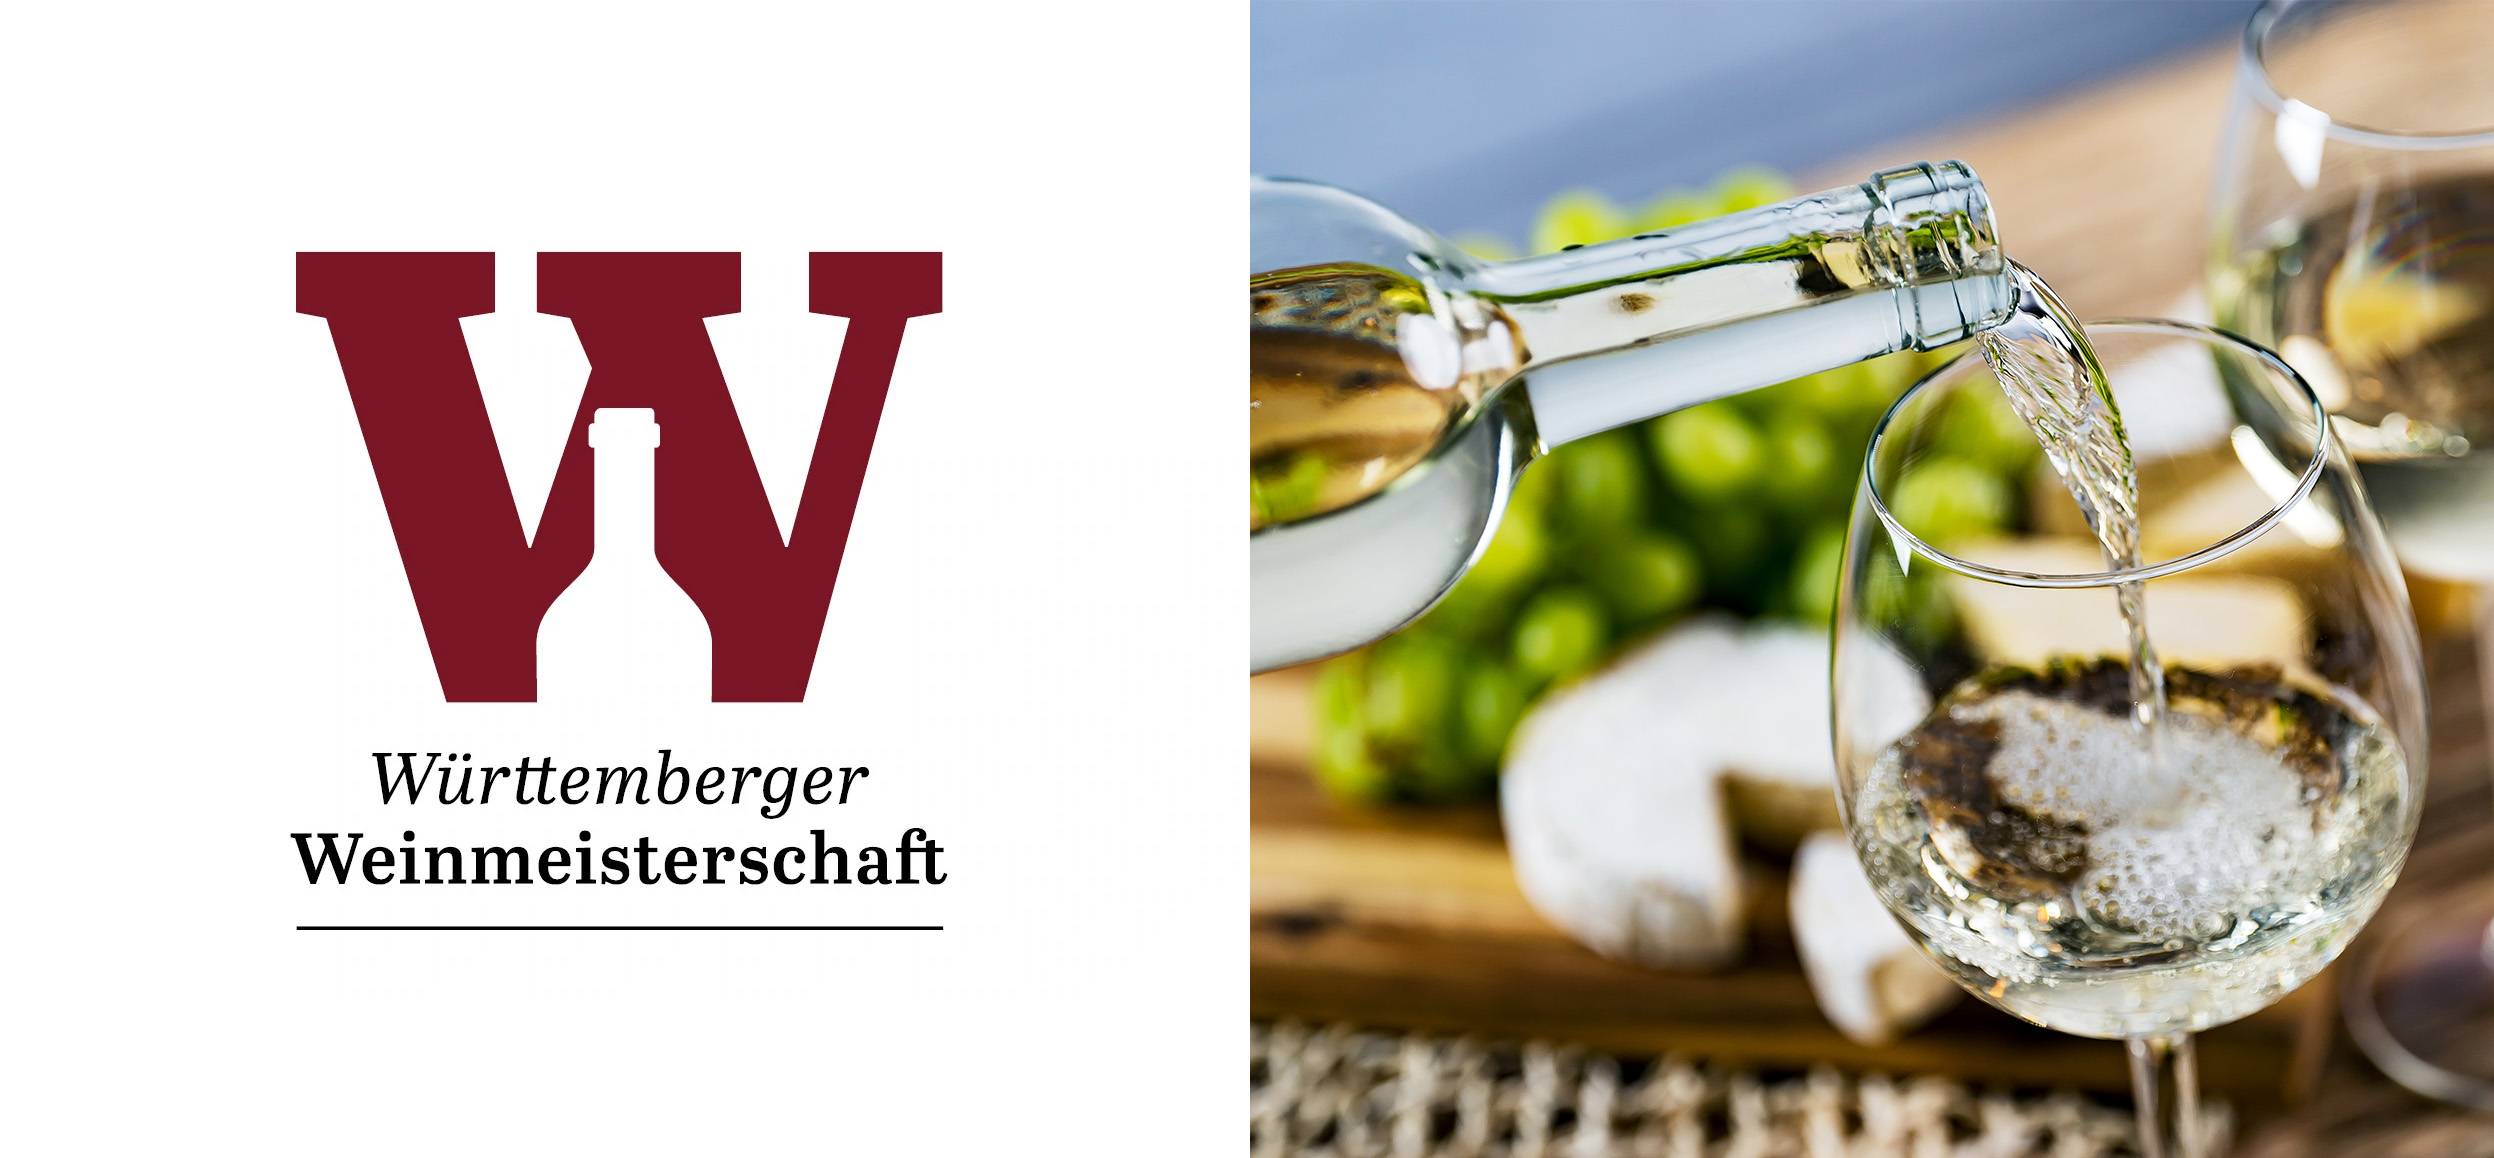 Die Württemberger Weinmeisterschaft geht in die nächste Runde!